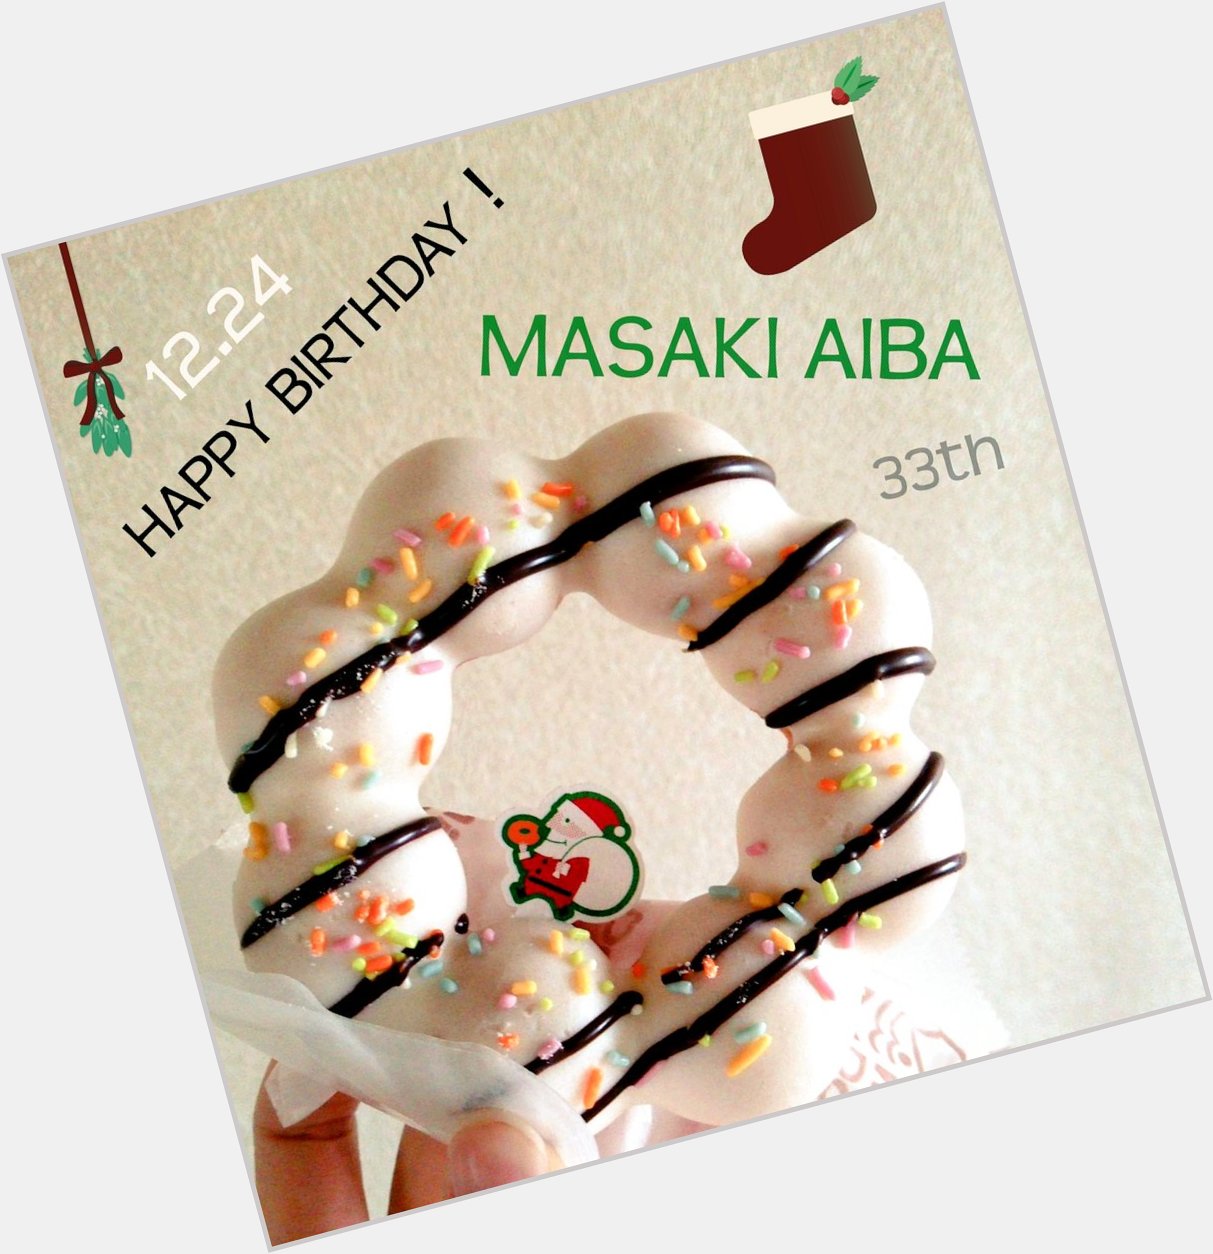 HAPPY BIRTHDAY MASAKI AIBA.
2015 1224 33th.

(            33                         )  